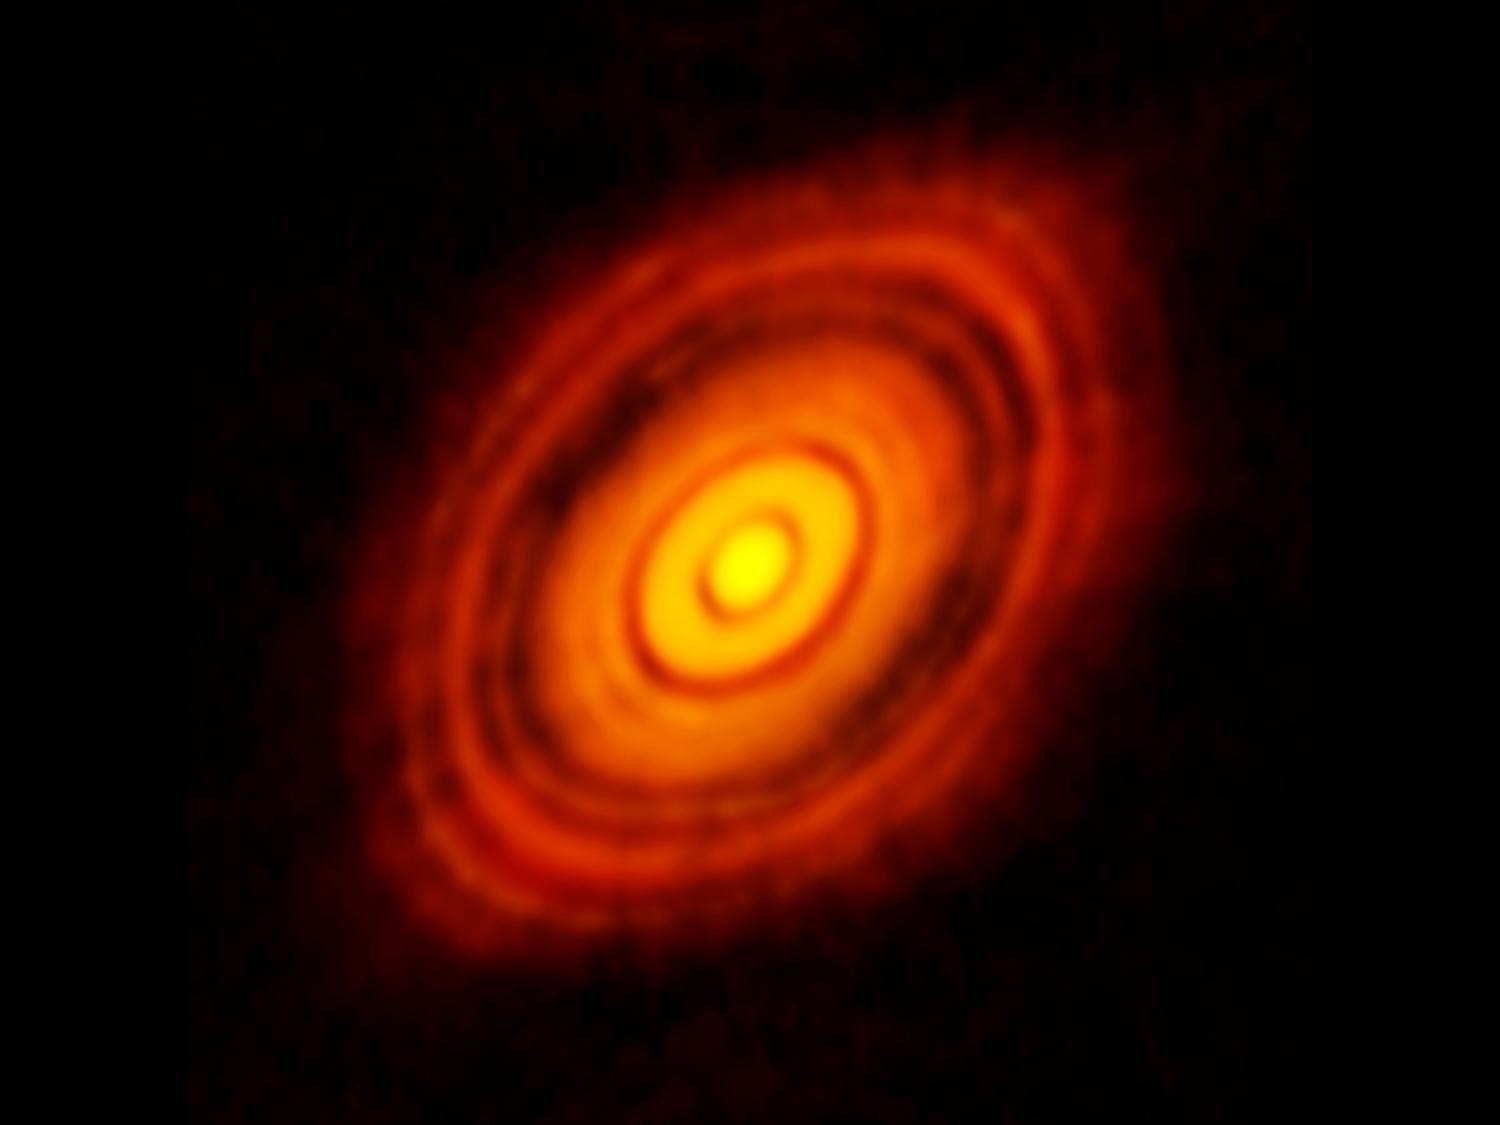 'Lehetetlen' rések a HL Tauri körüli por- és gázgyűrűben